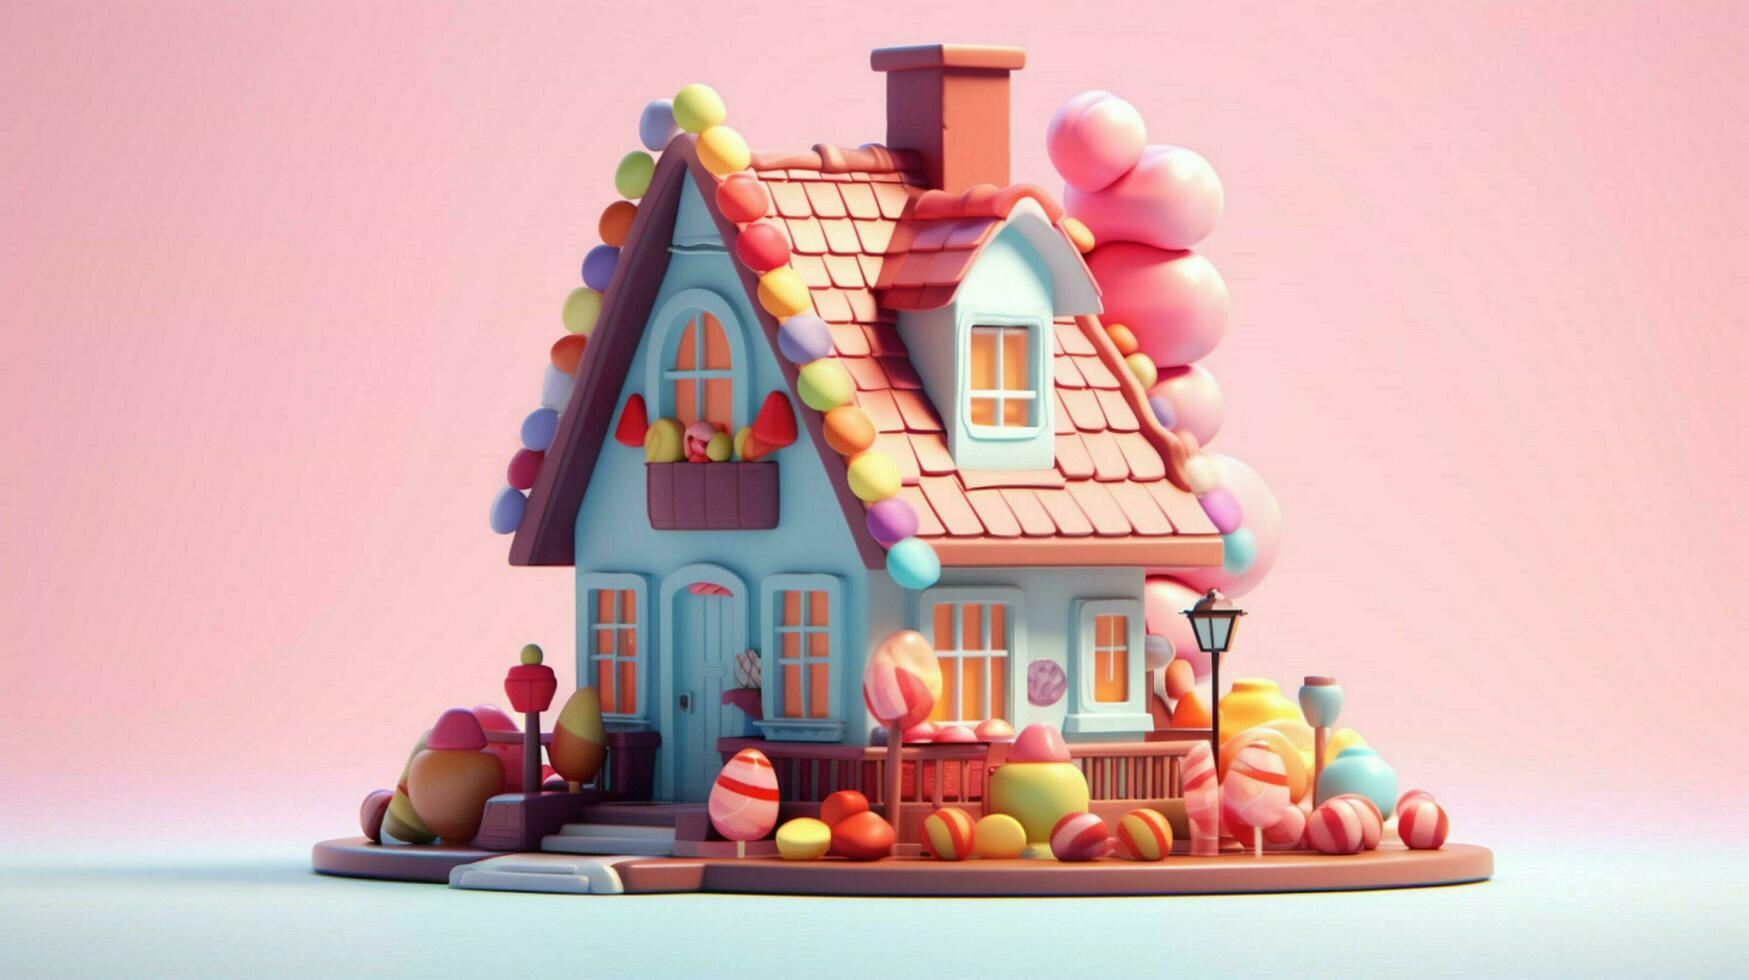 een luxe snoep huis met snoepgoed en chocola toetje foto